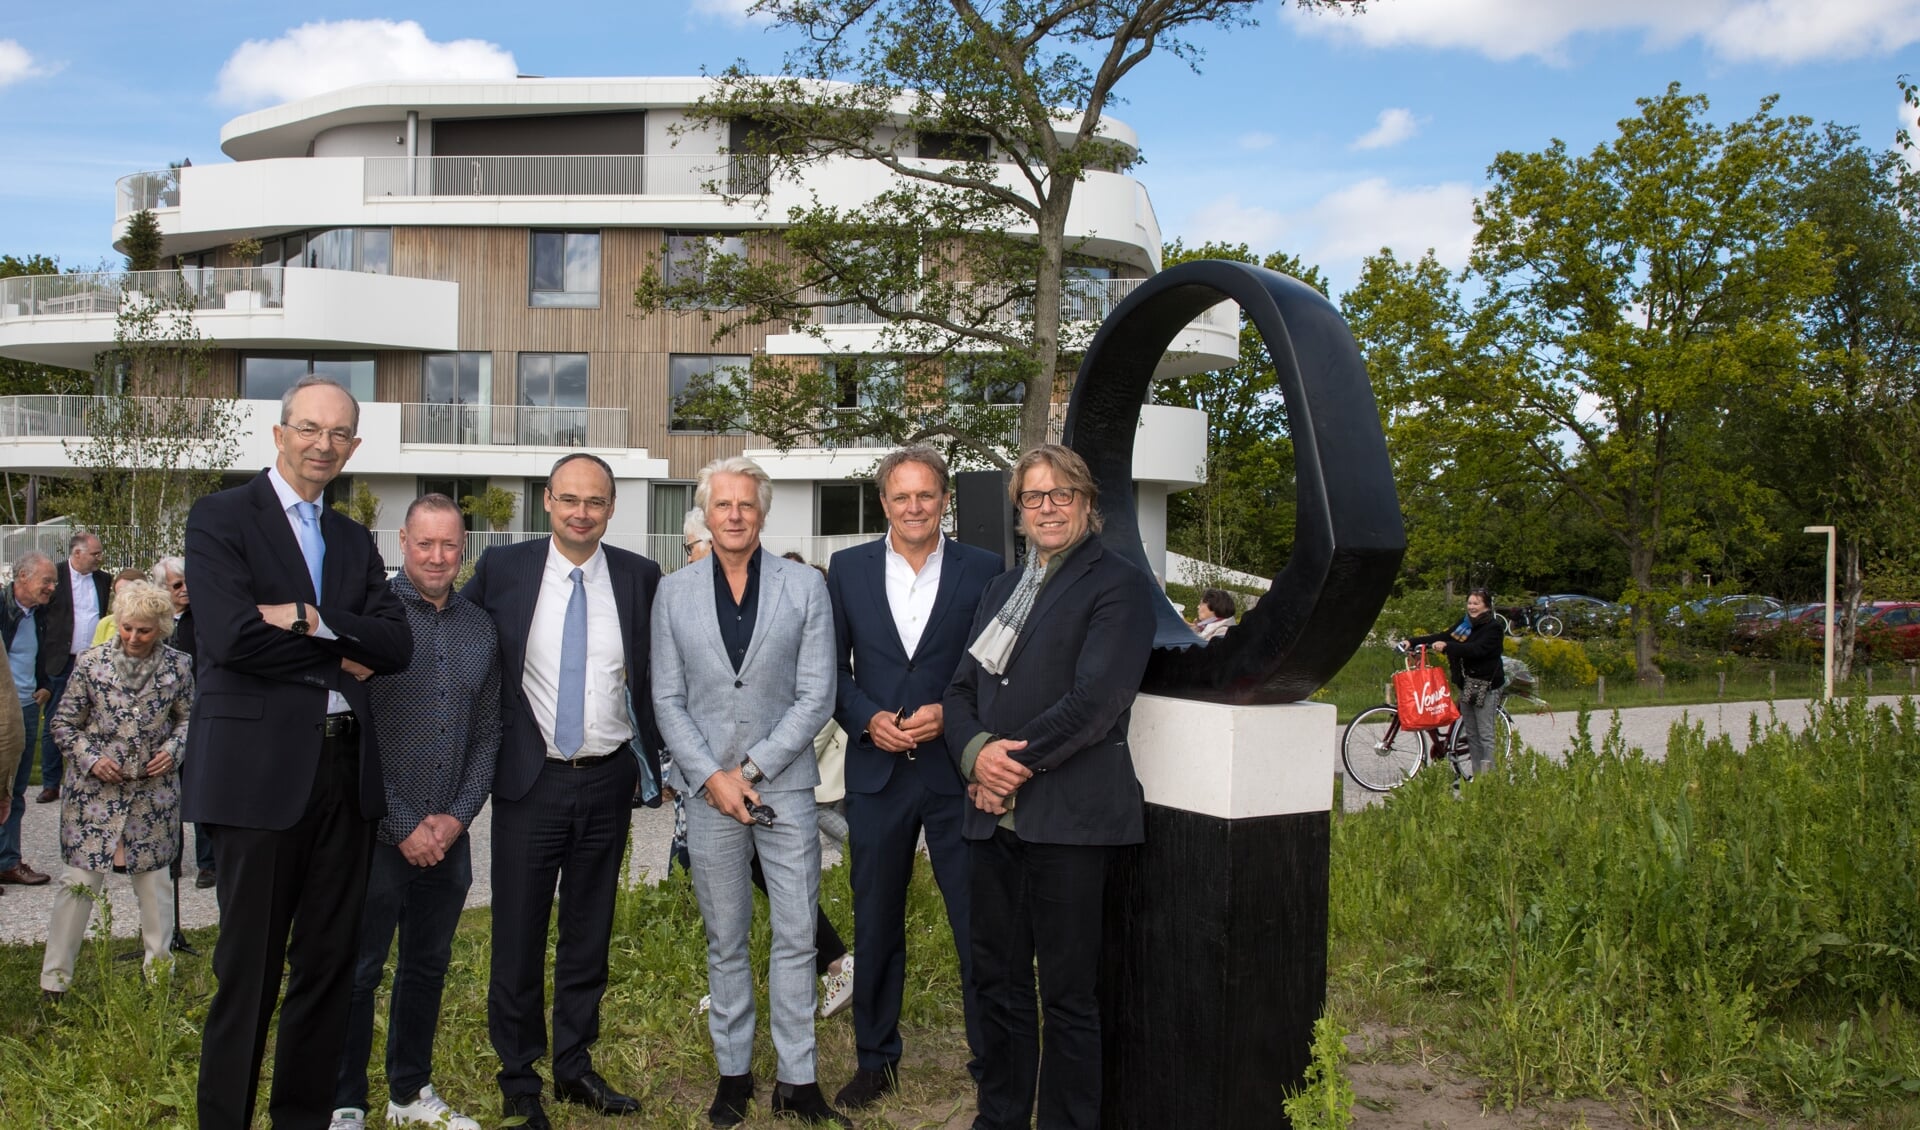 Henk Deen (projectontwikkelaar), Maarten Langeveld (projectontwikkelaar), Reinald Bosman (architect), Gem Bot (directeur Bot Bouw), Bastiaan Smit (makelaar) en bewoner Dick Bouma, naast het beeld 'de cirkel'.